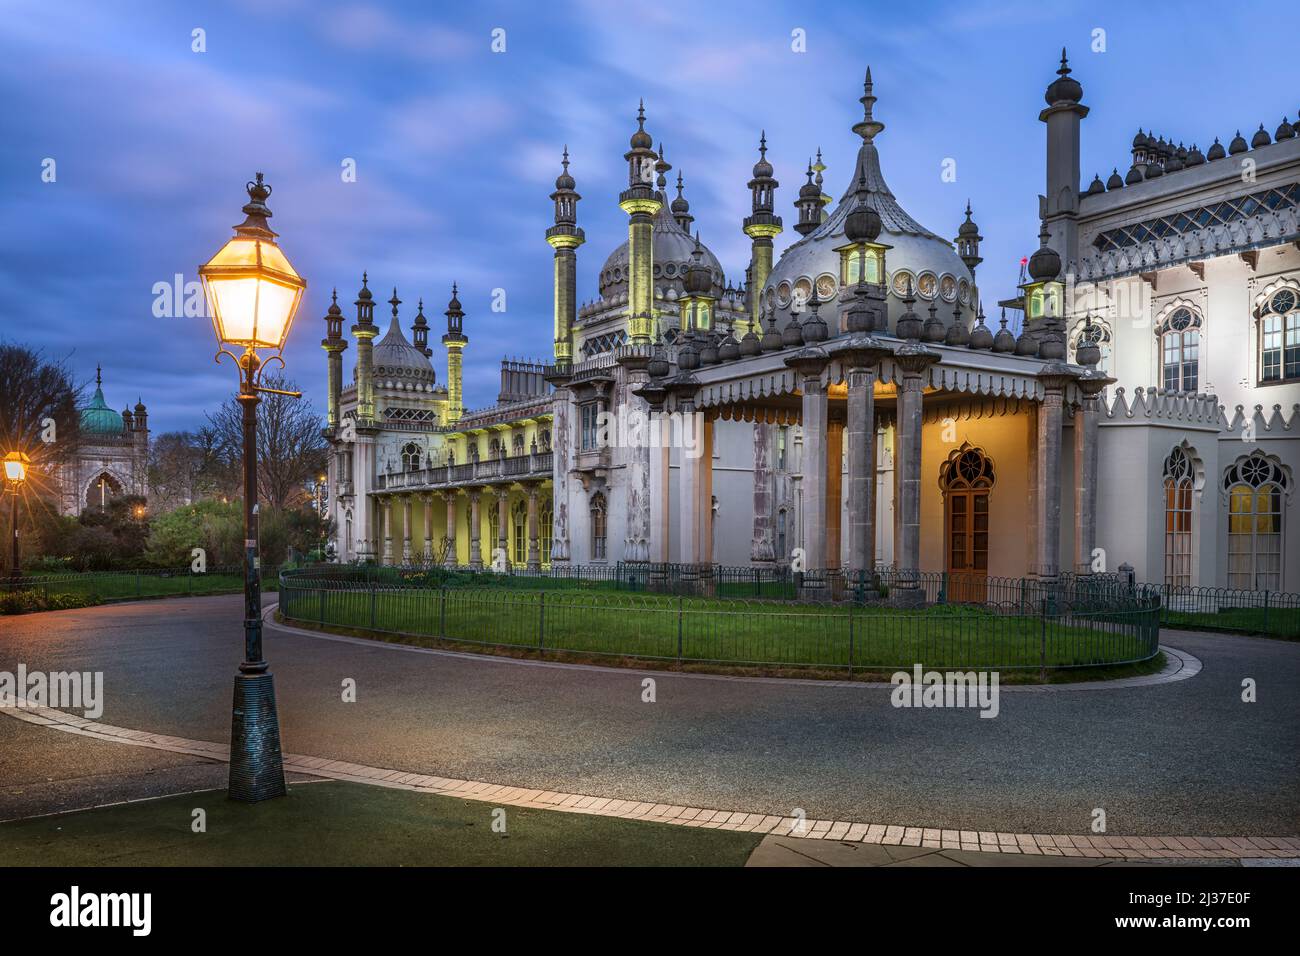 Der Royal Pavilion, auch bekannt als Brighton Pavilions, ist eine ehemalige königliche Residenz der Klasse I, die sich an der Grand Parade in Brighton befindet. Der pa Stockfoto